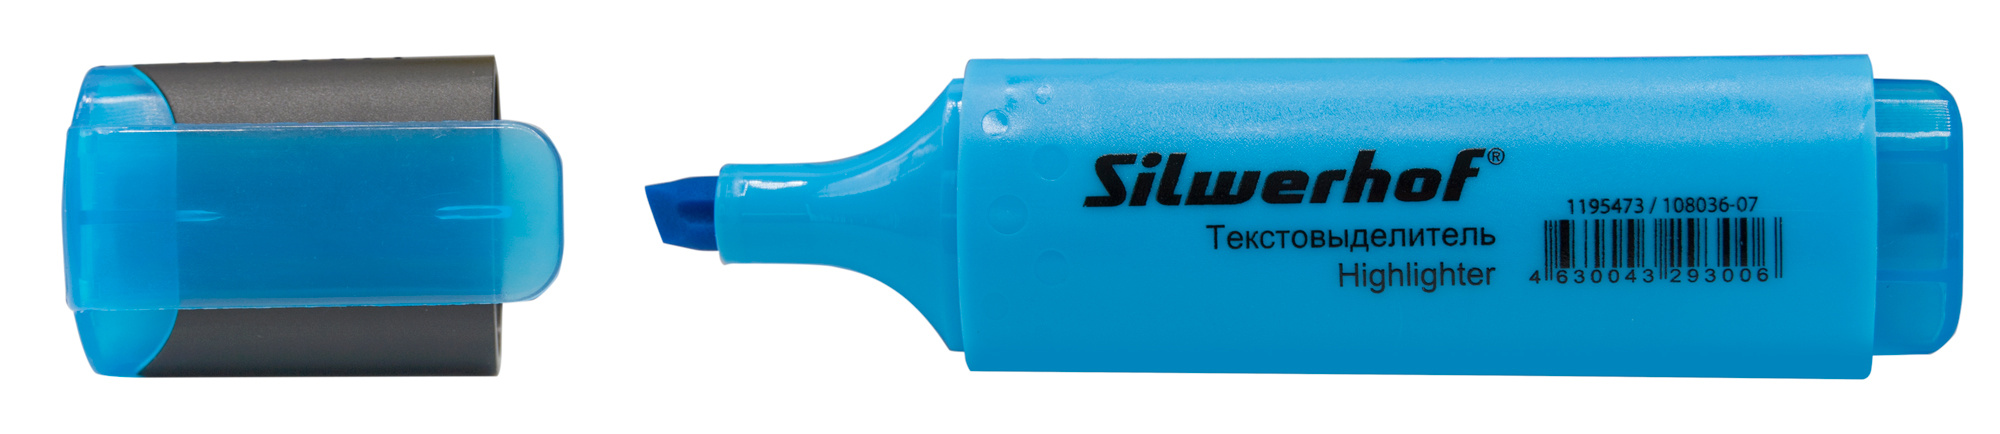 Текстовыделитель Silwerhof Blaze скошенный пиш. наконечник 1-5мм голубой картон (108036-07)